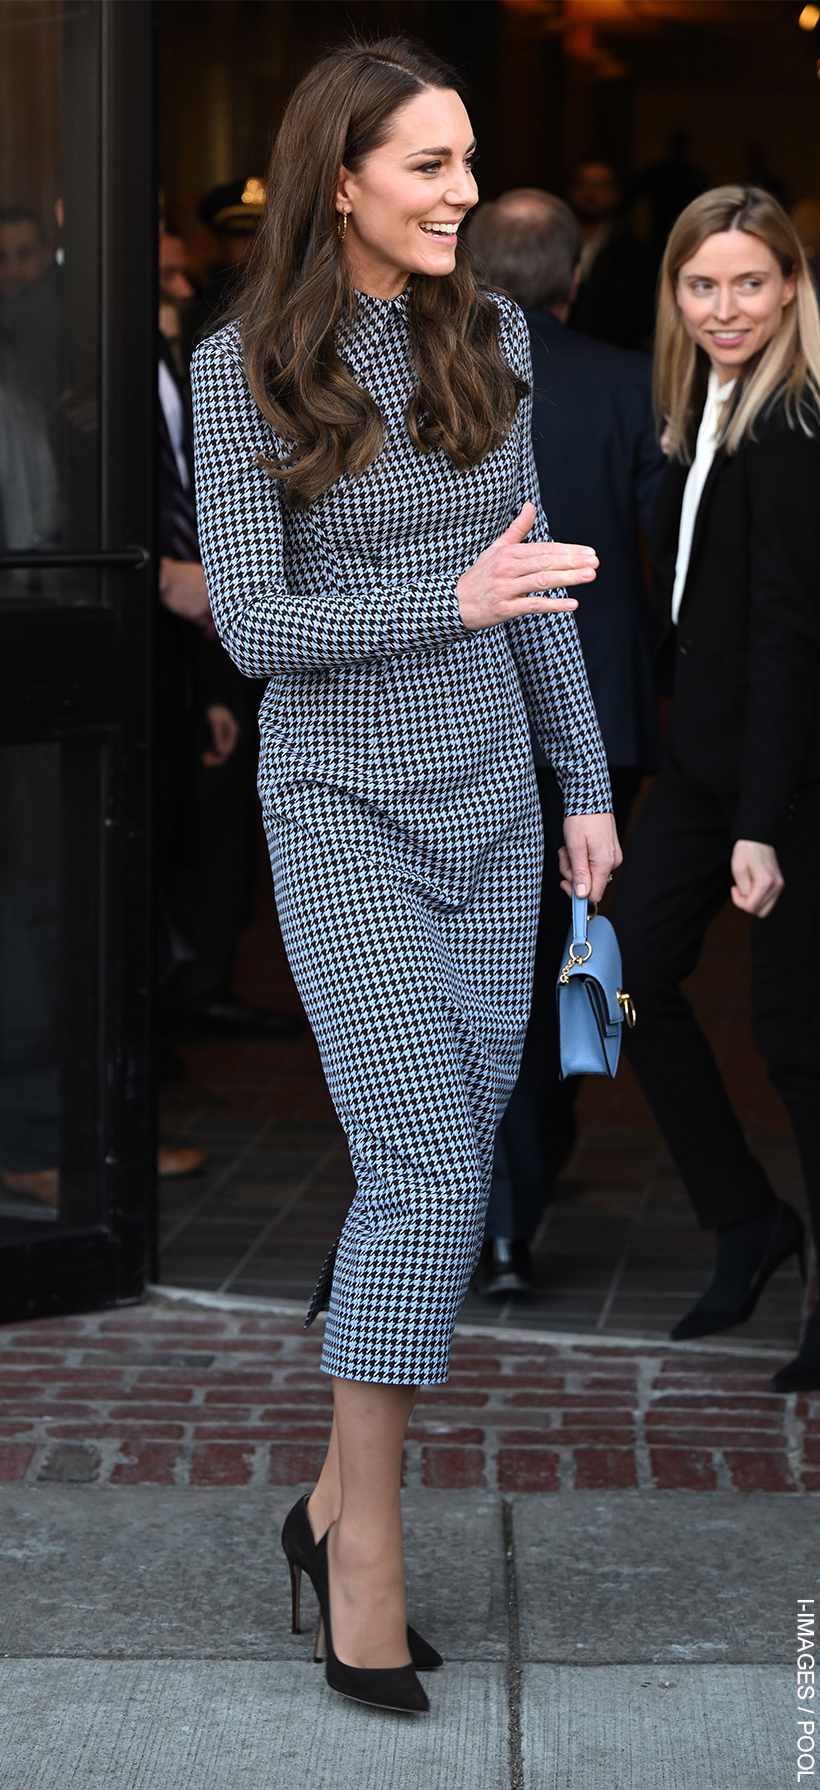 Kate Middleton Wears Blue Houndstooth Dress for Harvard Visit